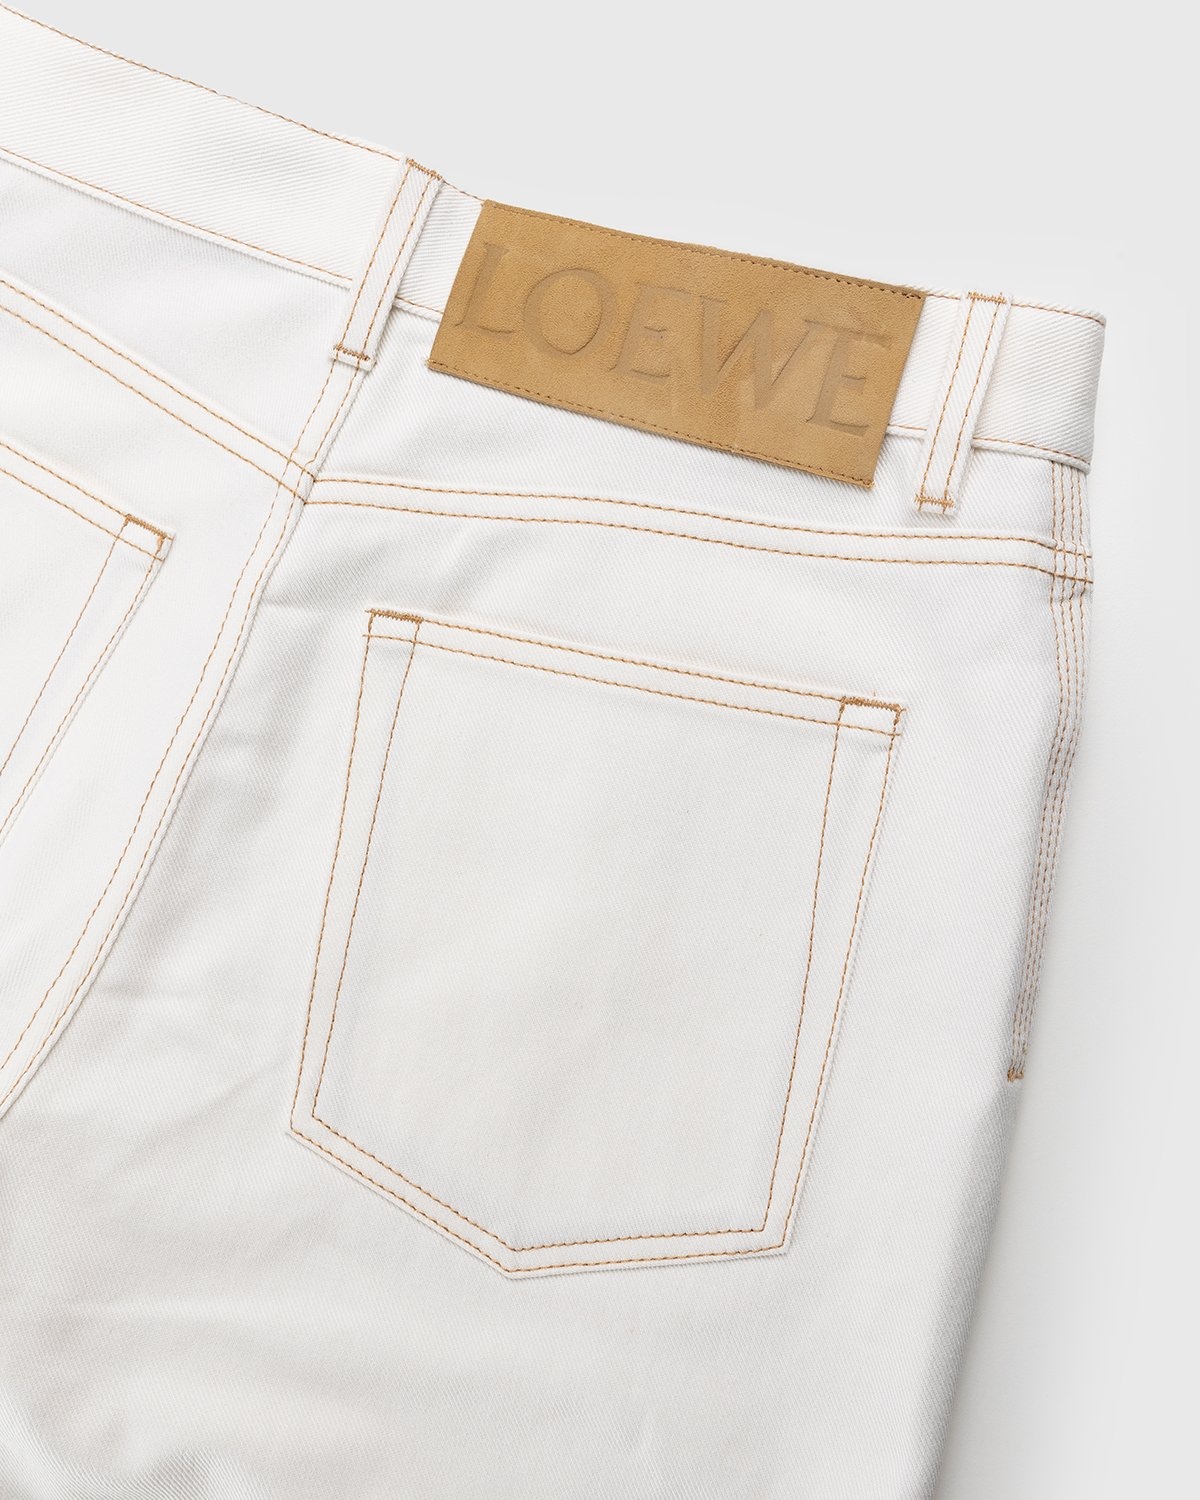 Loewe – Paula's Ibiza Boot Cut Denim Trousers White - Denim - White - Image 3